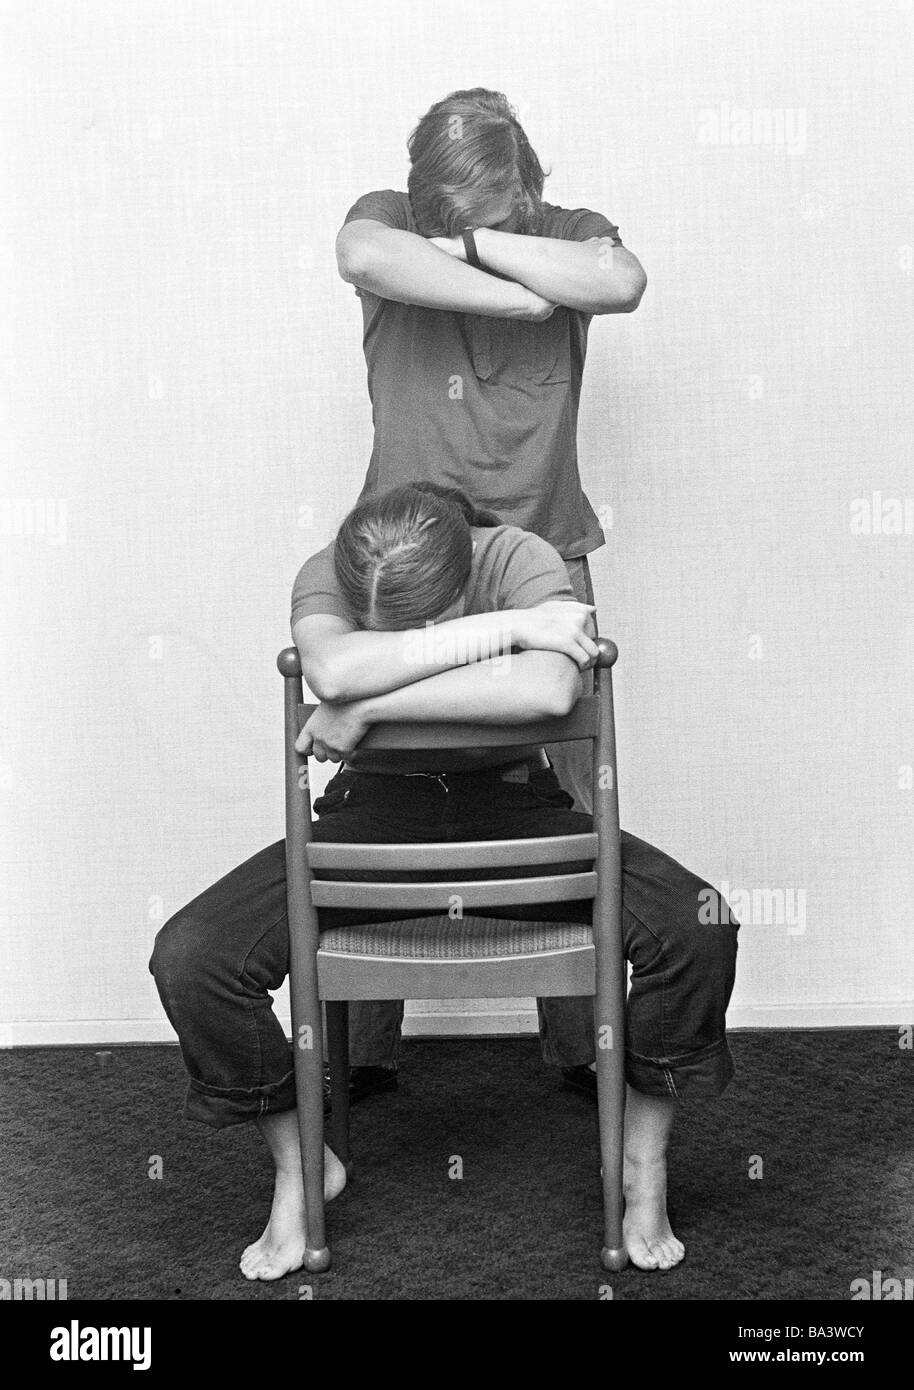 Negli anni settanta, foto in bianco e nero, la salute, la meditazione, la coppia giovane meditando, donna si siede su una sedia, l uomo sta dietro, di età compresa tra i 20 e i 25 anni Foto Stock